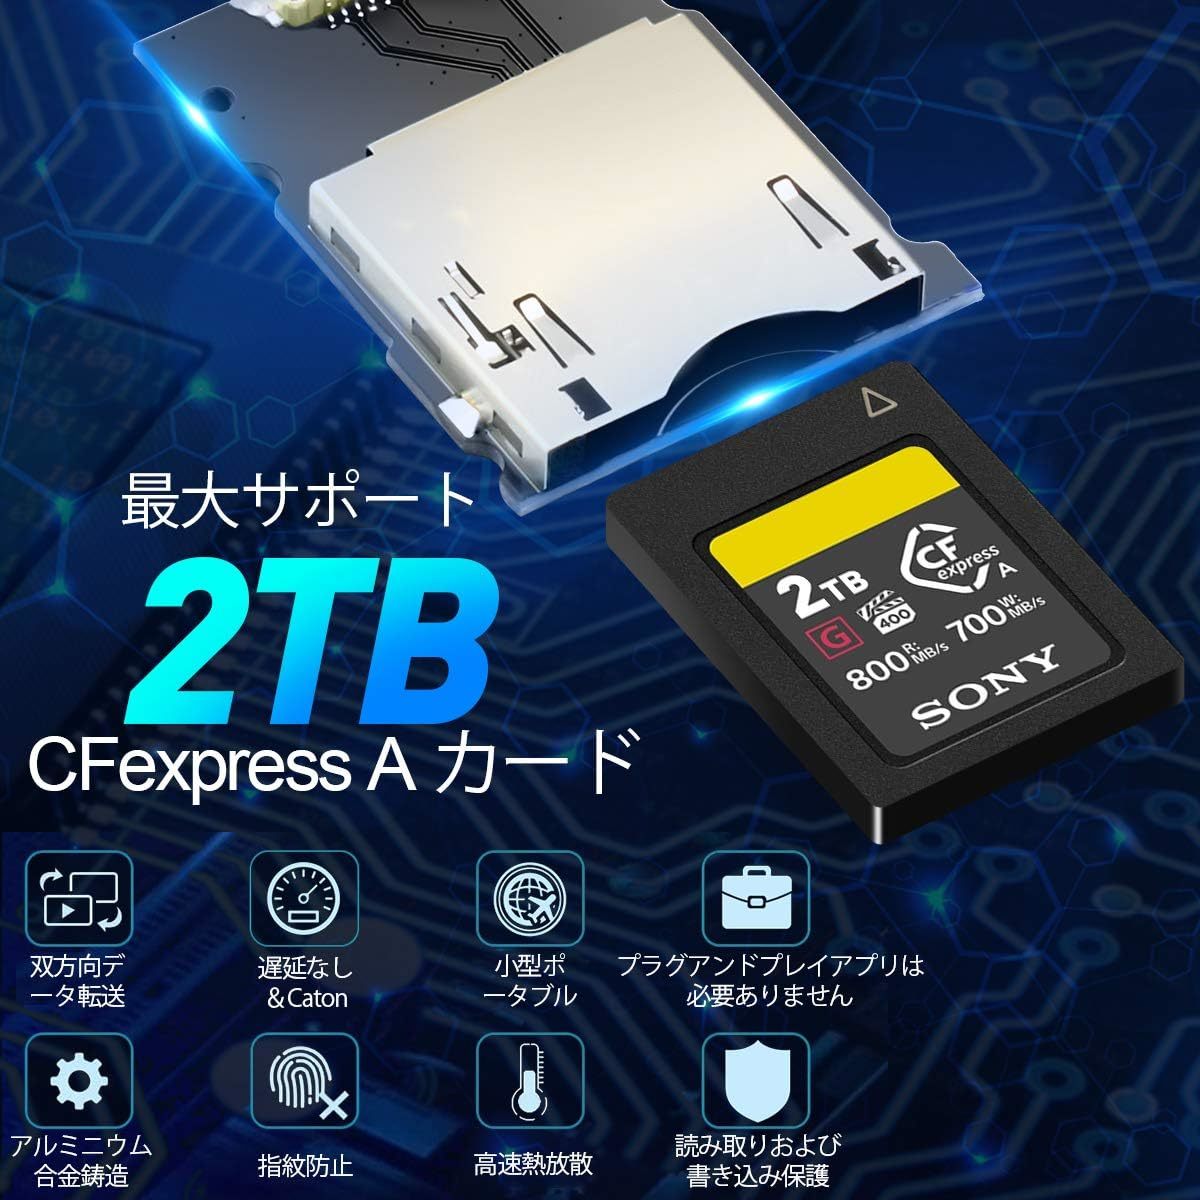 CFexpressタイプAリーダー ポータブル USB 3.1 Gen 2 CFexpressタイプAカードリーダー、Thunderbolt3ポート接続CFexpressリーダーサポート_画像5